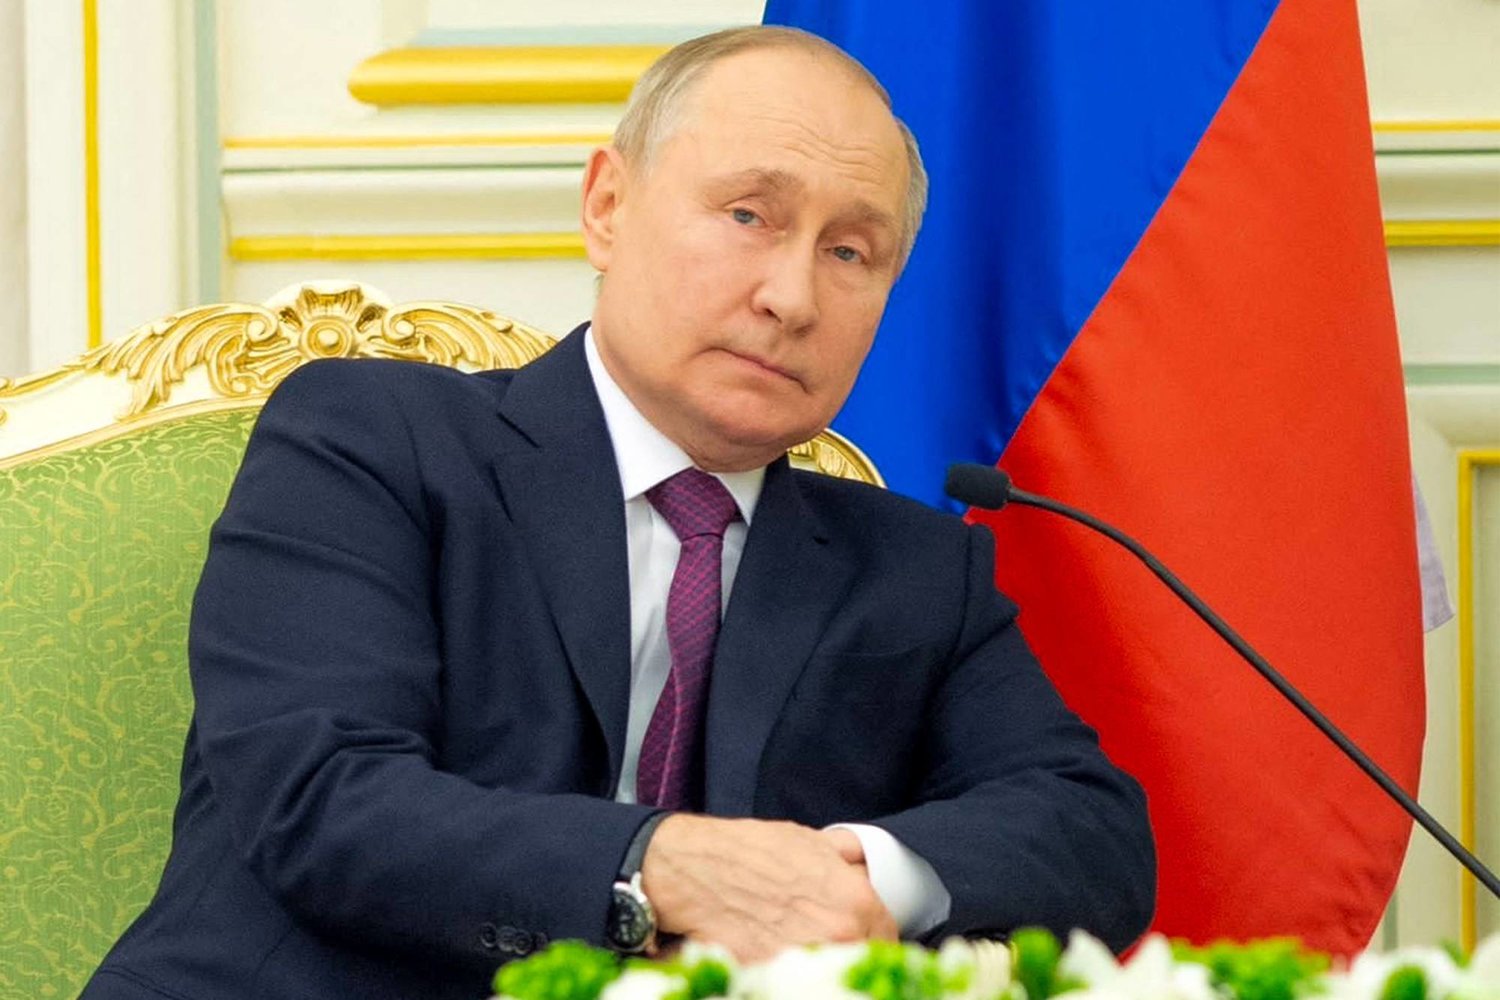 دام برس : تنصيب بوتين رئيساً لروسياً لولاية جديدة.. وريابكوف يفسر سبب دعوة الدول غير الصديقة لحضور المراسم